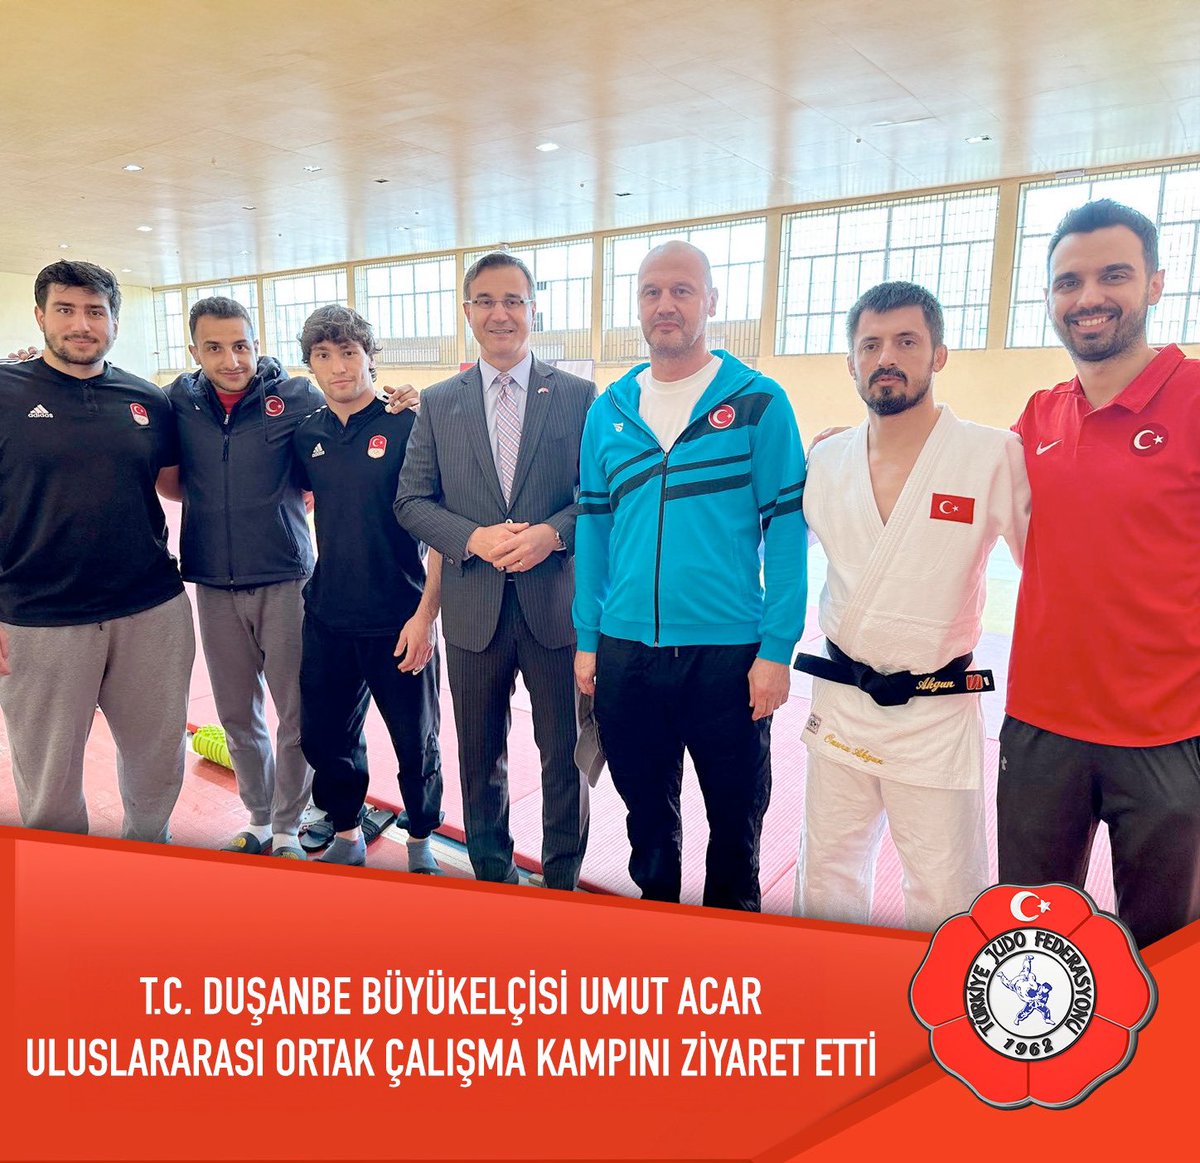 T.C. Duşanbe Büyükelçisi Umut Acar Uluslararası Ortak Çalışma Kampını ziyaret etti. 

Dushanbe’de ortak çalışma kampında olan büyükler milli takımımızı ziyaret eden T.C. Duşanbe Büyükelçisi Umut Acar takımımıza gelecek turnuvalarda başarılarını iletti.

#türkiyejudofederasyonu